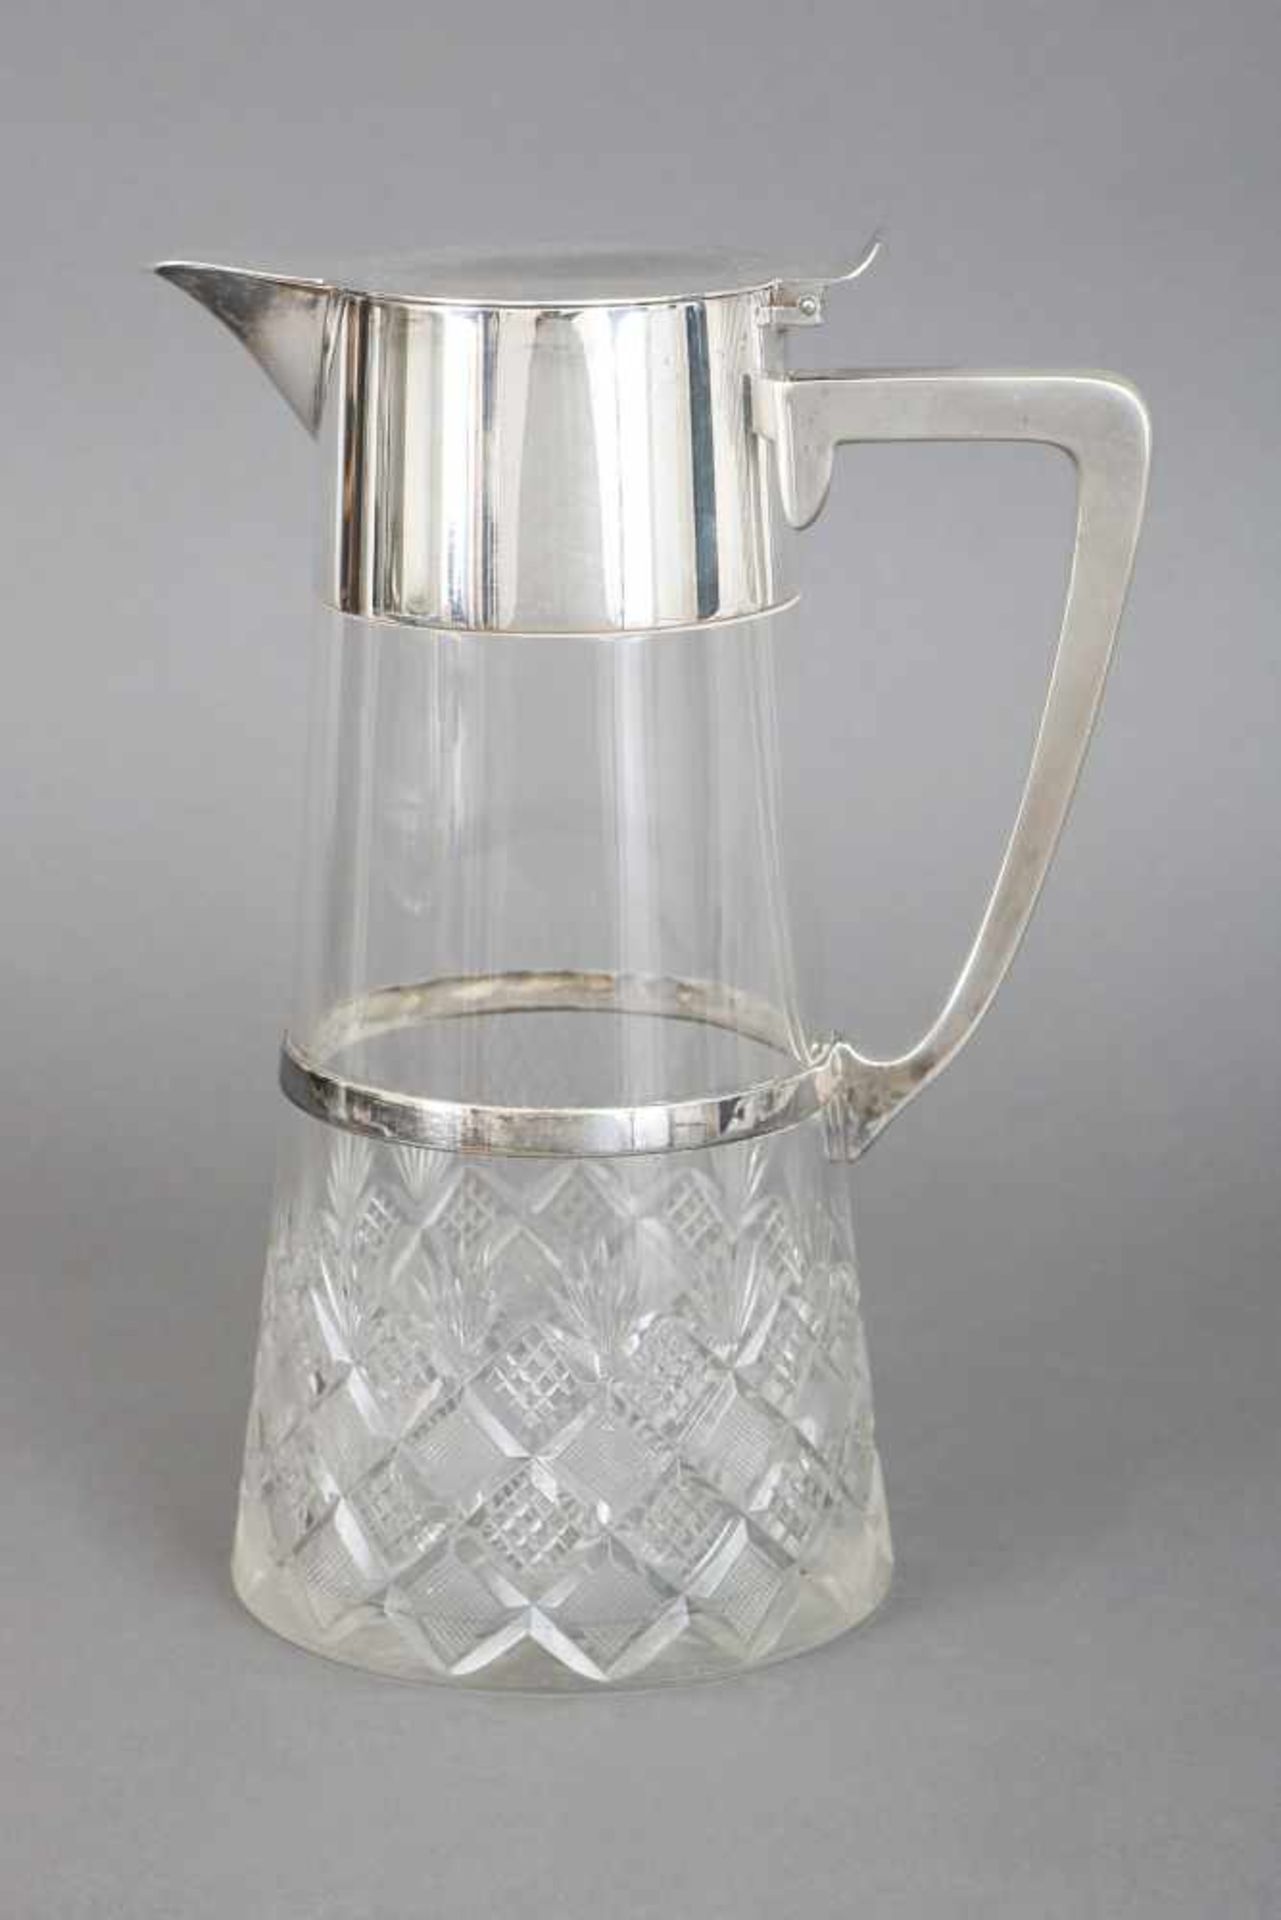 WMF SchenkkrugKristall und versilbertes Metall, um 1920, konischer Glaskorpus mit Waffel- und